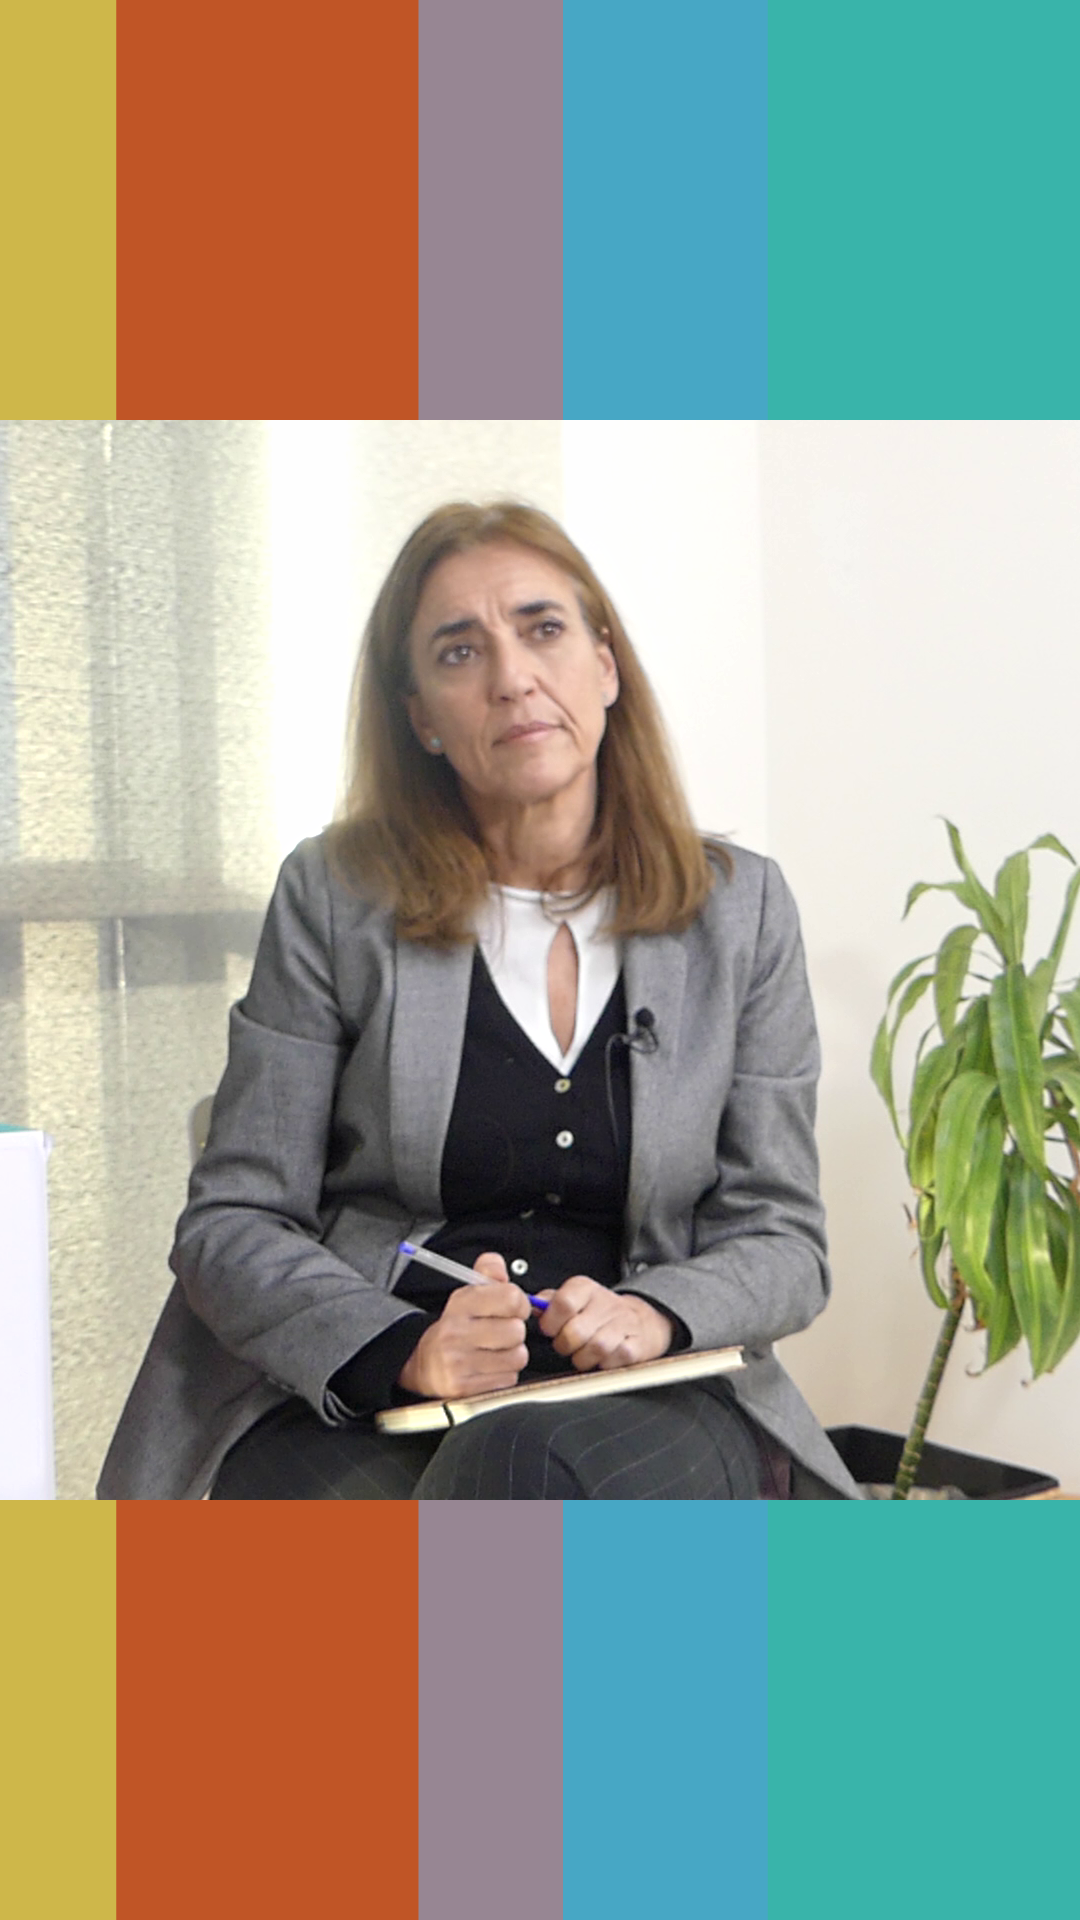 La directora del área de Gestión Pública y Evaluación, Ana Cirera nos explica detalladamente su función dentro de Considera.